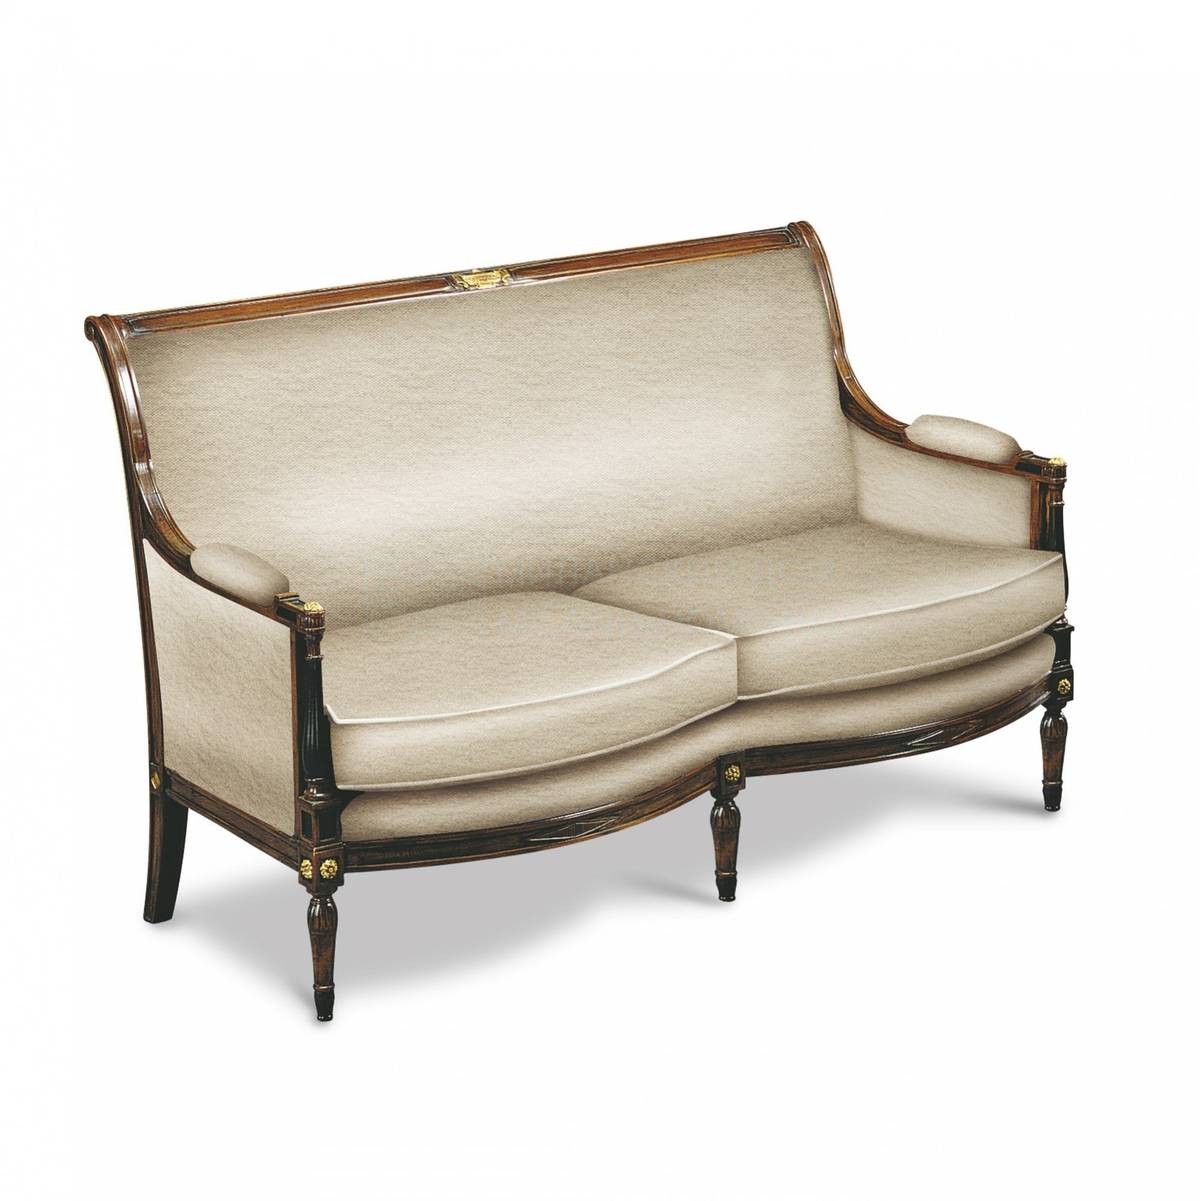 Прямой диван The Upholstery/D23 из Италии фабрики FRANCESCO MOLON